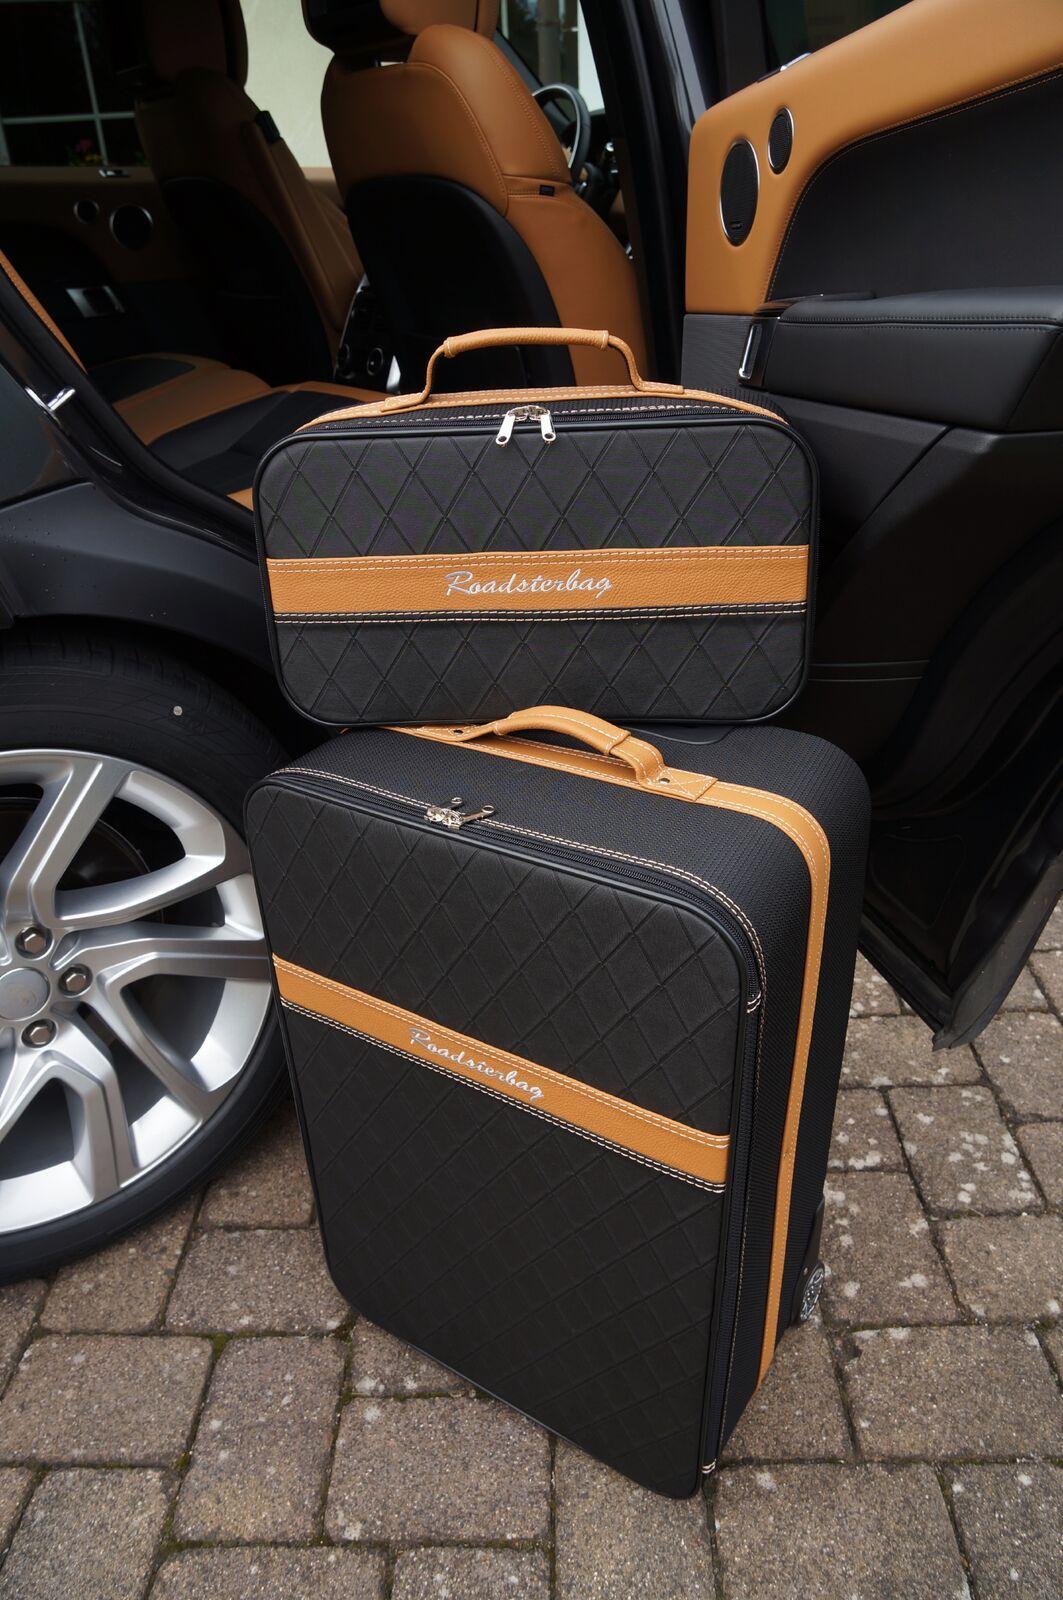 Kofferset voor uw Cabrio bij roadsterbag